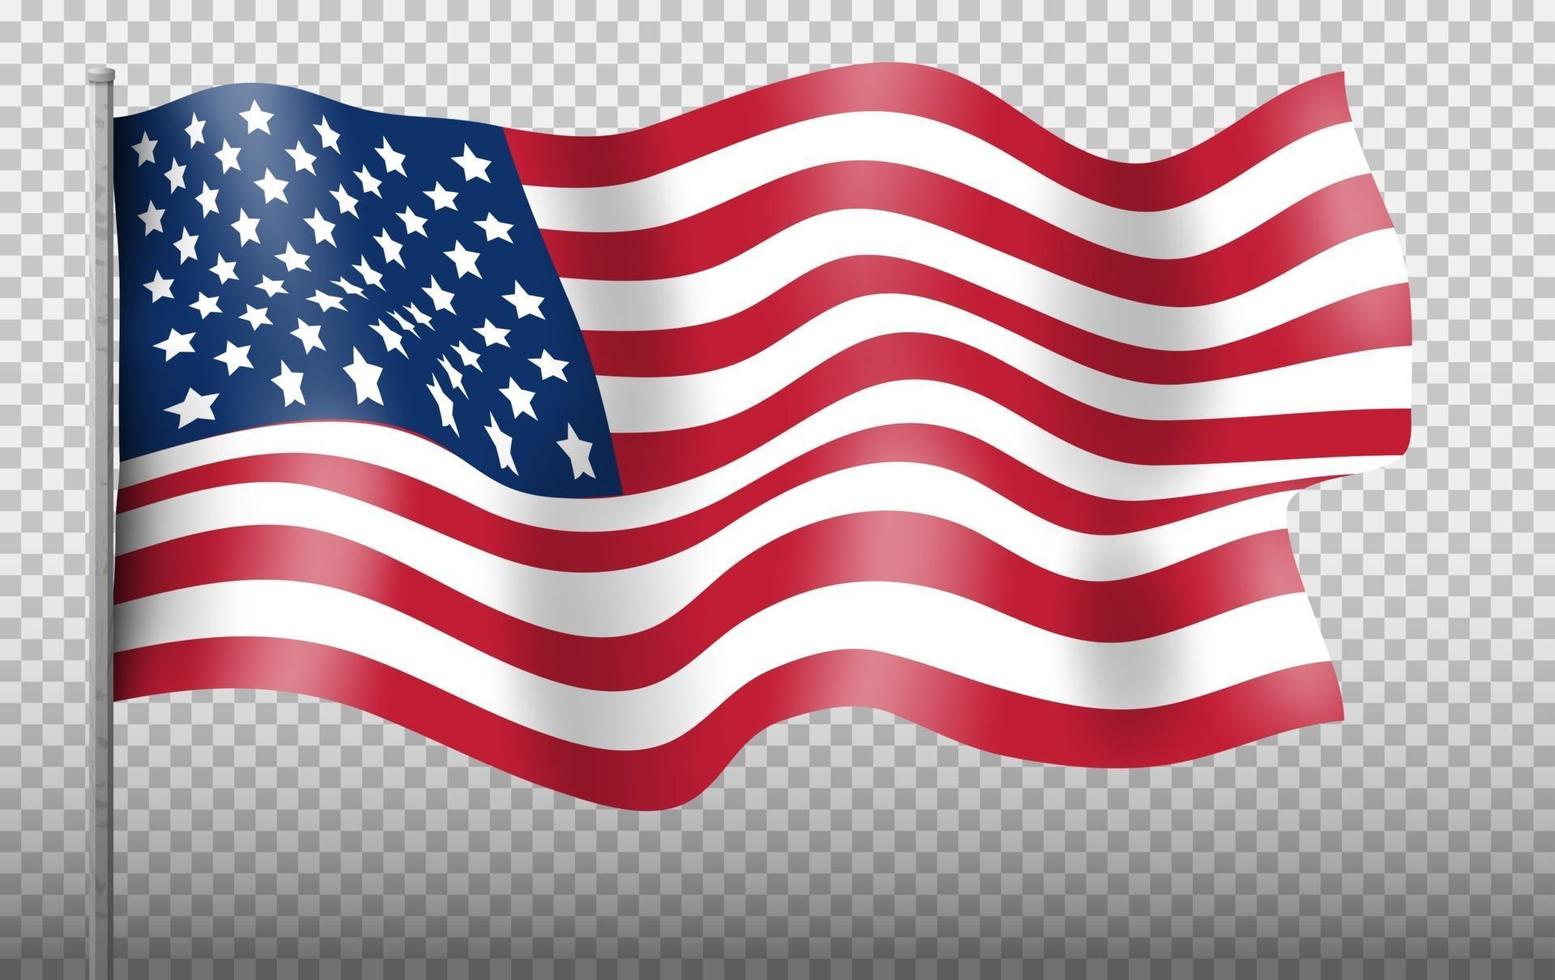 wapperende vlag van de verenigde staten van amerika op transparante achtergrond. Amerikaanse vlag voor onafhankelijkheidsdag. vectoreps10 vector